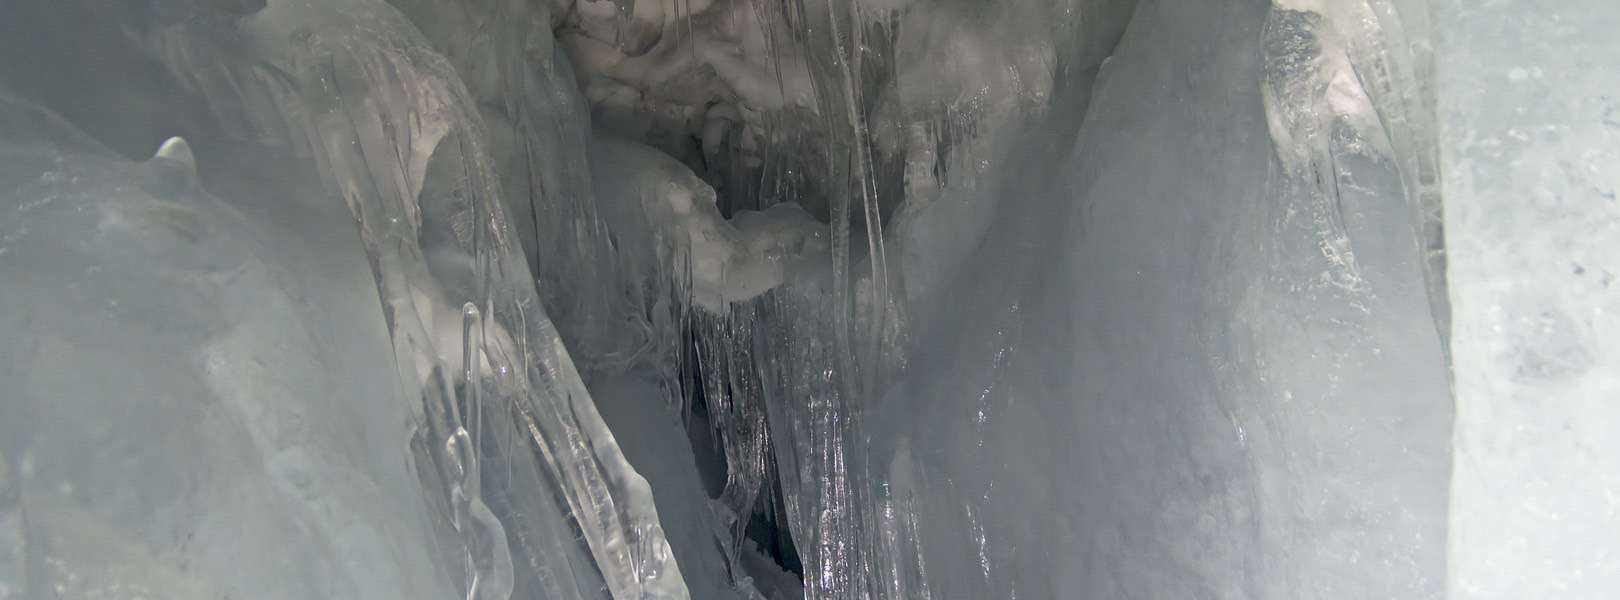 Hintertuxer Gletscher bietet ein Natureisspiel - 3250 Meter tiefe Gletscher in Hintertür